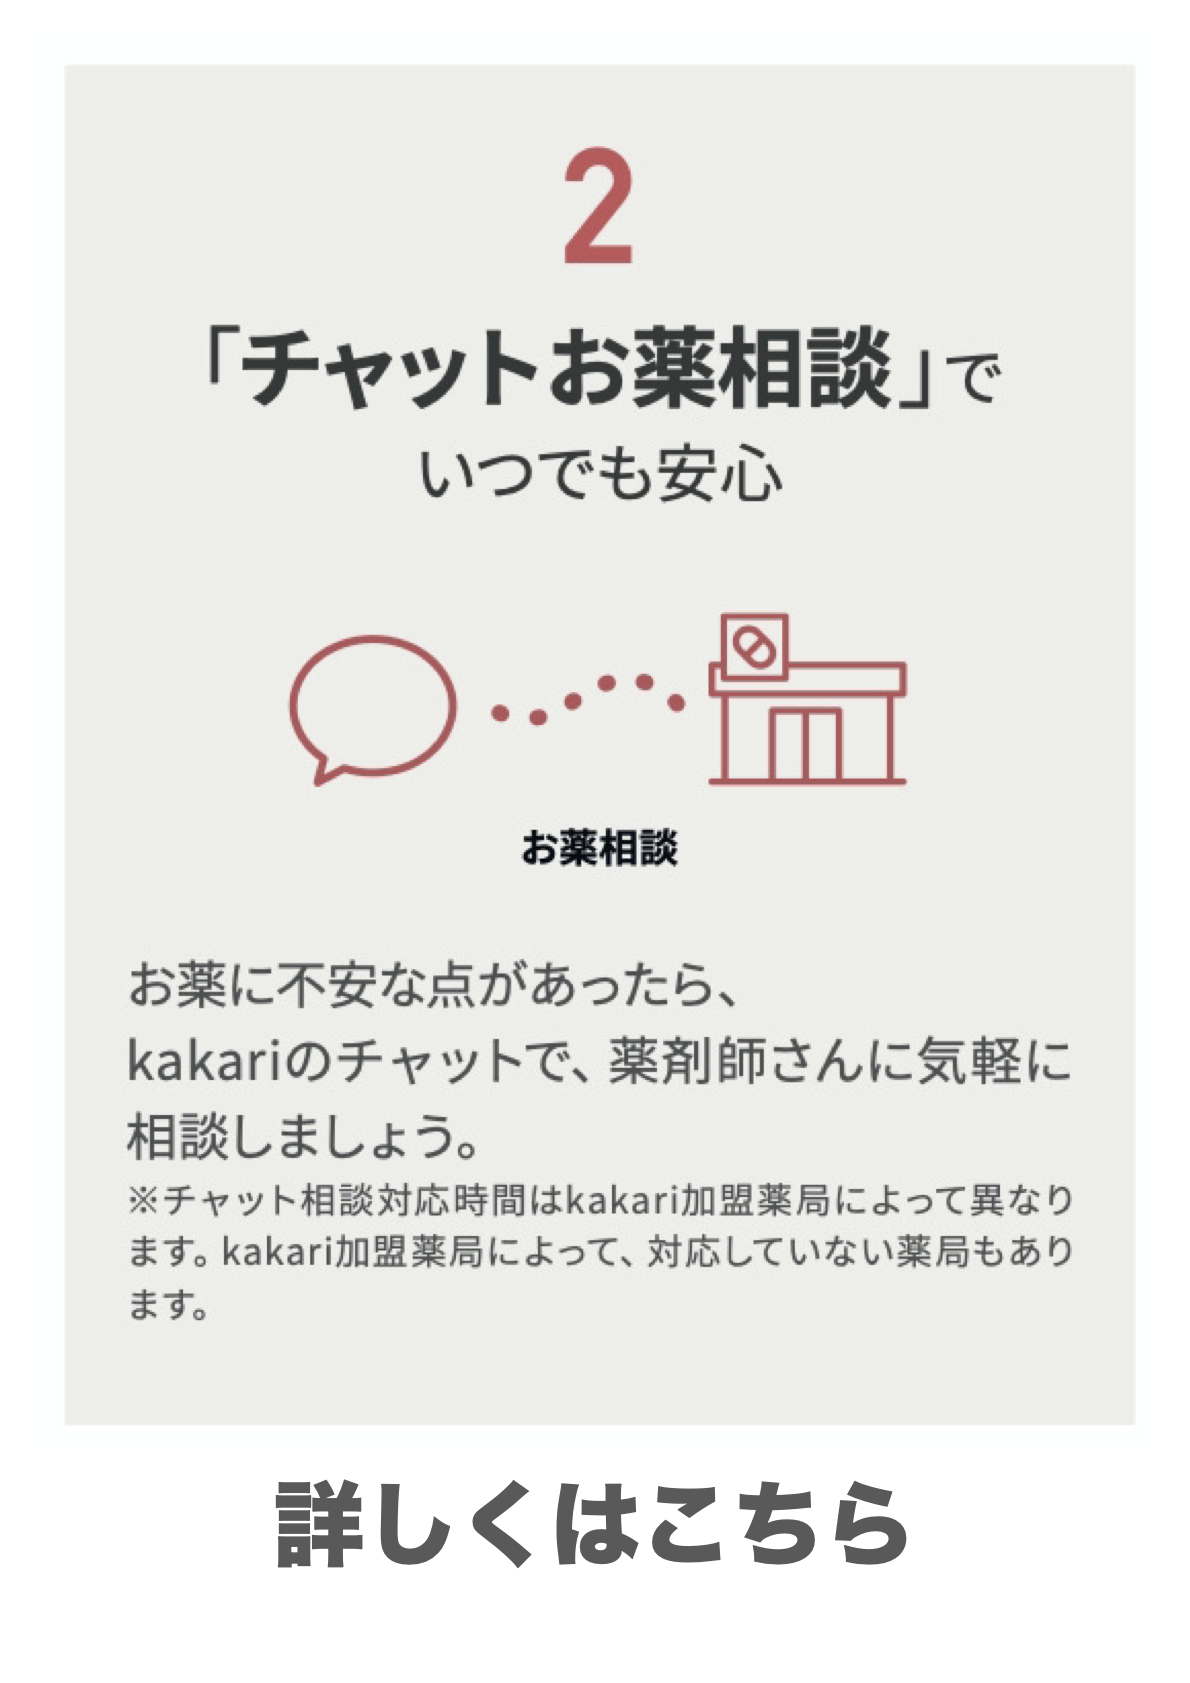 処方せん送信&お薬手帳アプリ(Kakari)の機能2